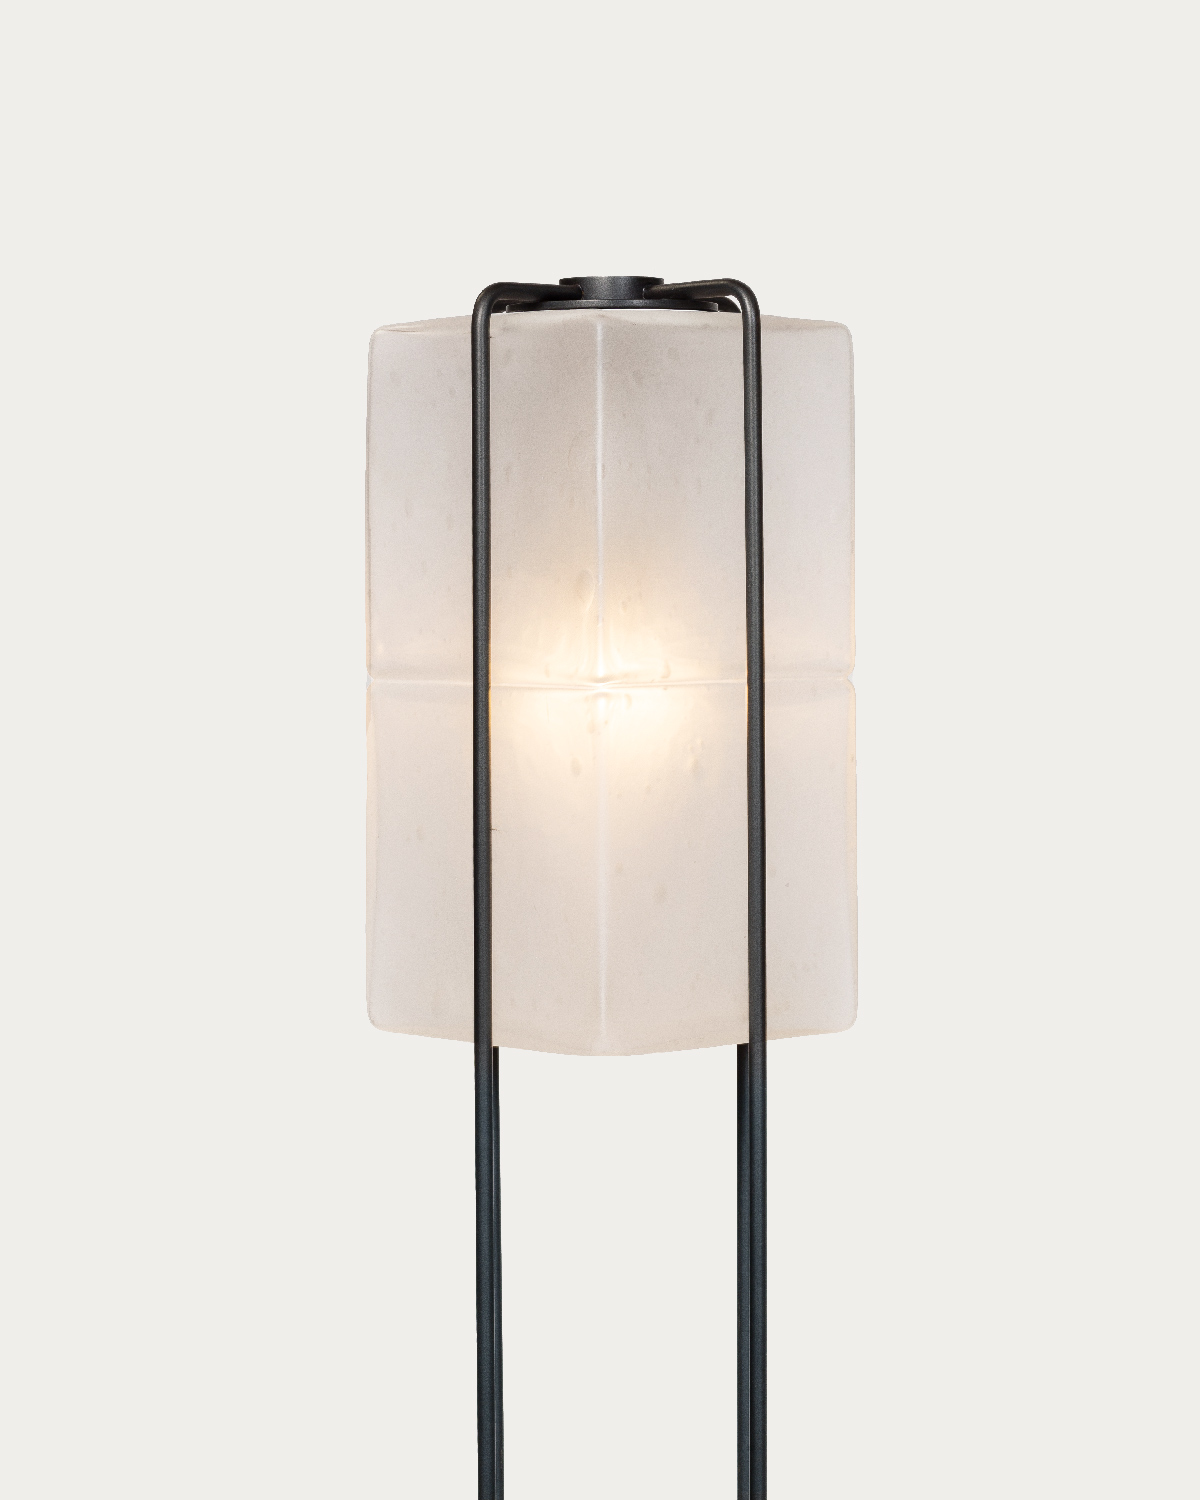 ALICE FLOOR LAMP par Atelier de Troupe